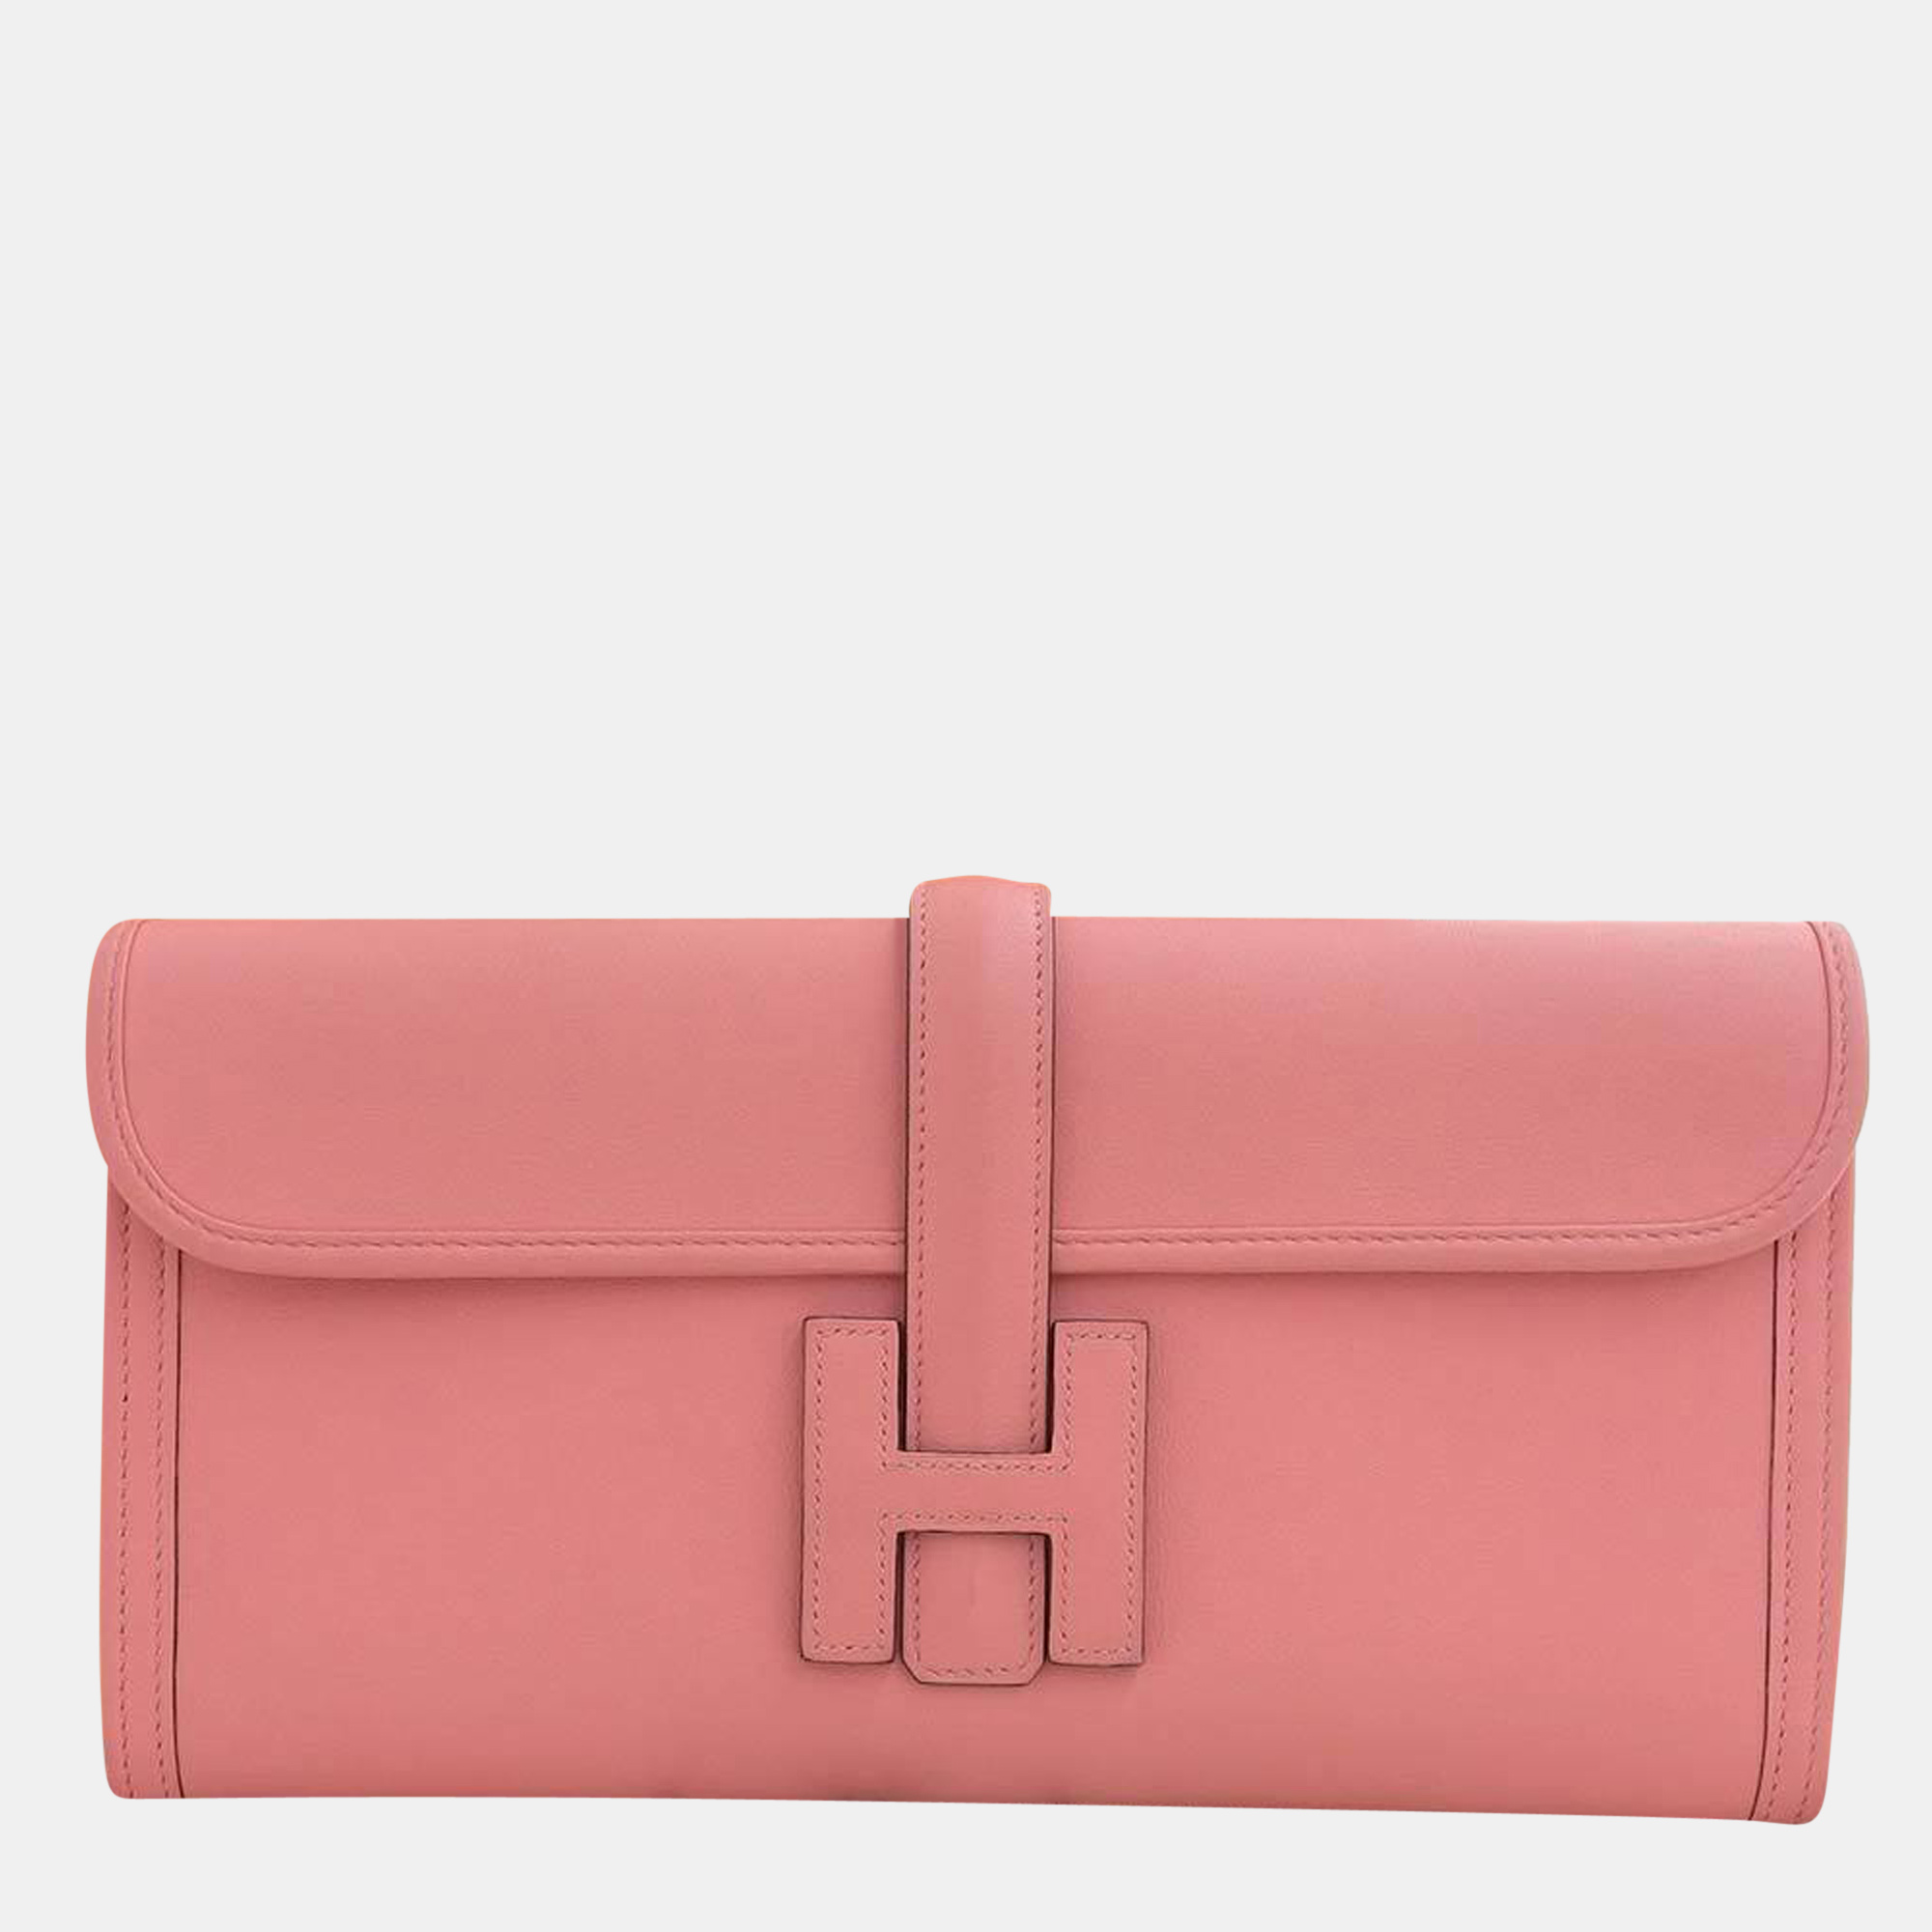 Hermes Jije Elan 29 Clutch Bag Swift Pink D Engraved